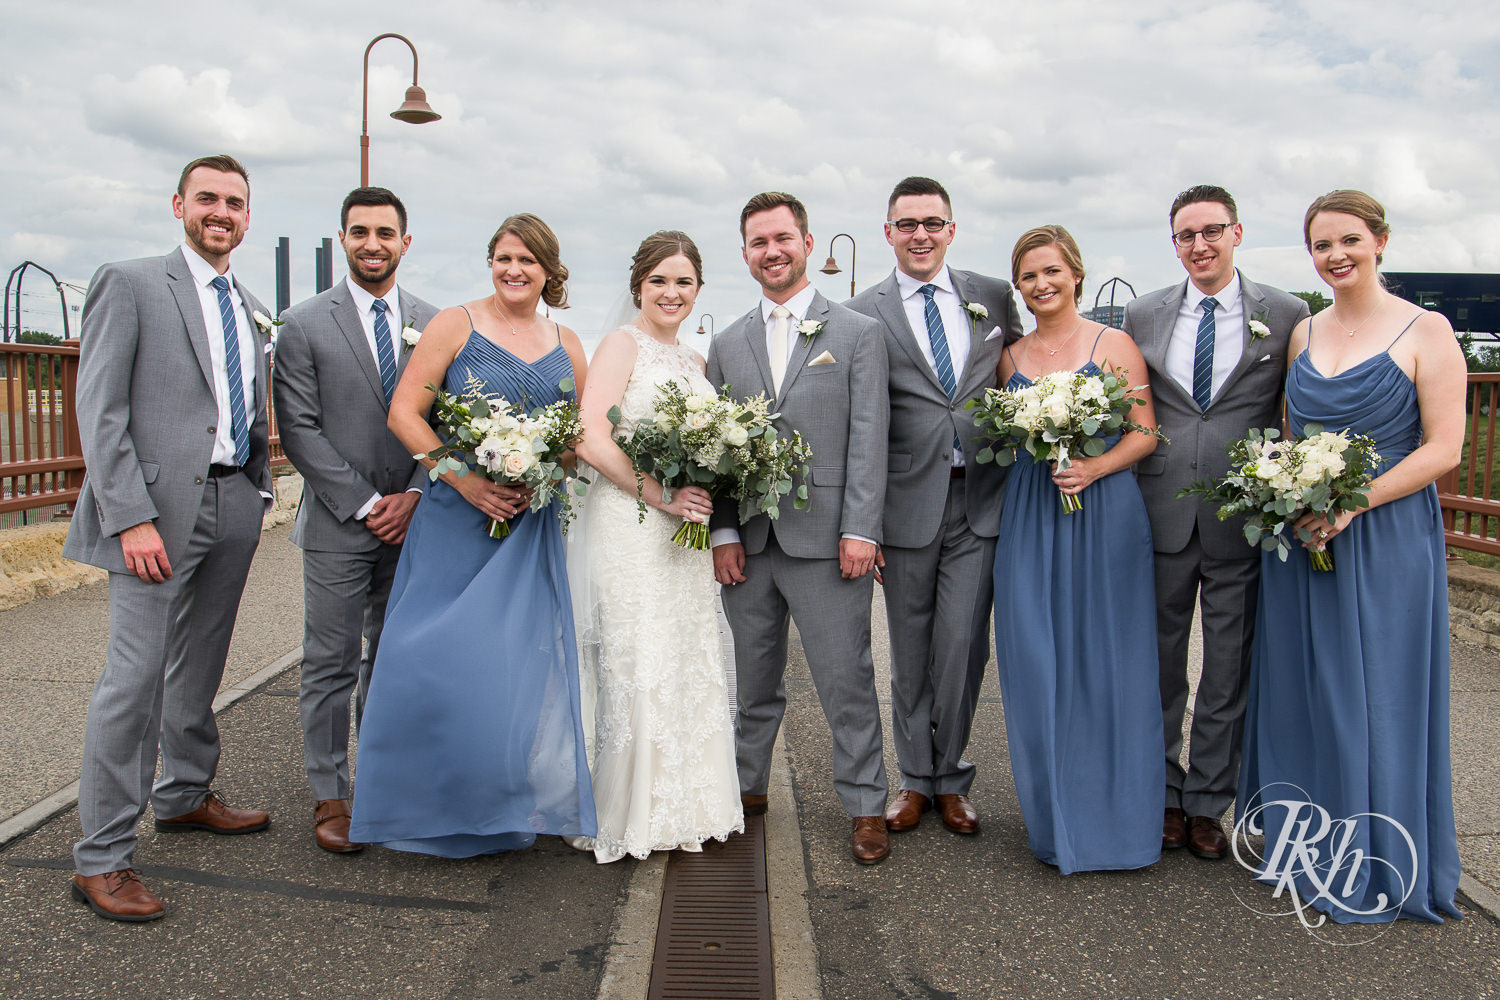 Wedding party smiles on the Stone Arch Bridge in Minneapolis, Minnesota.